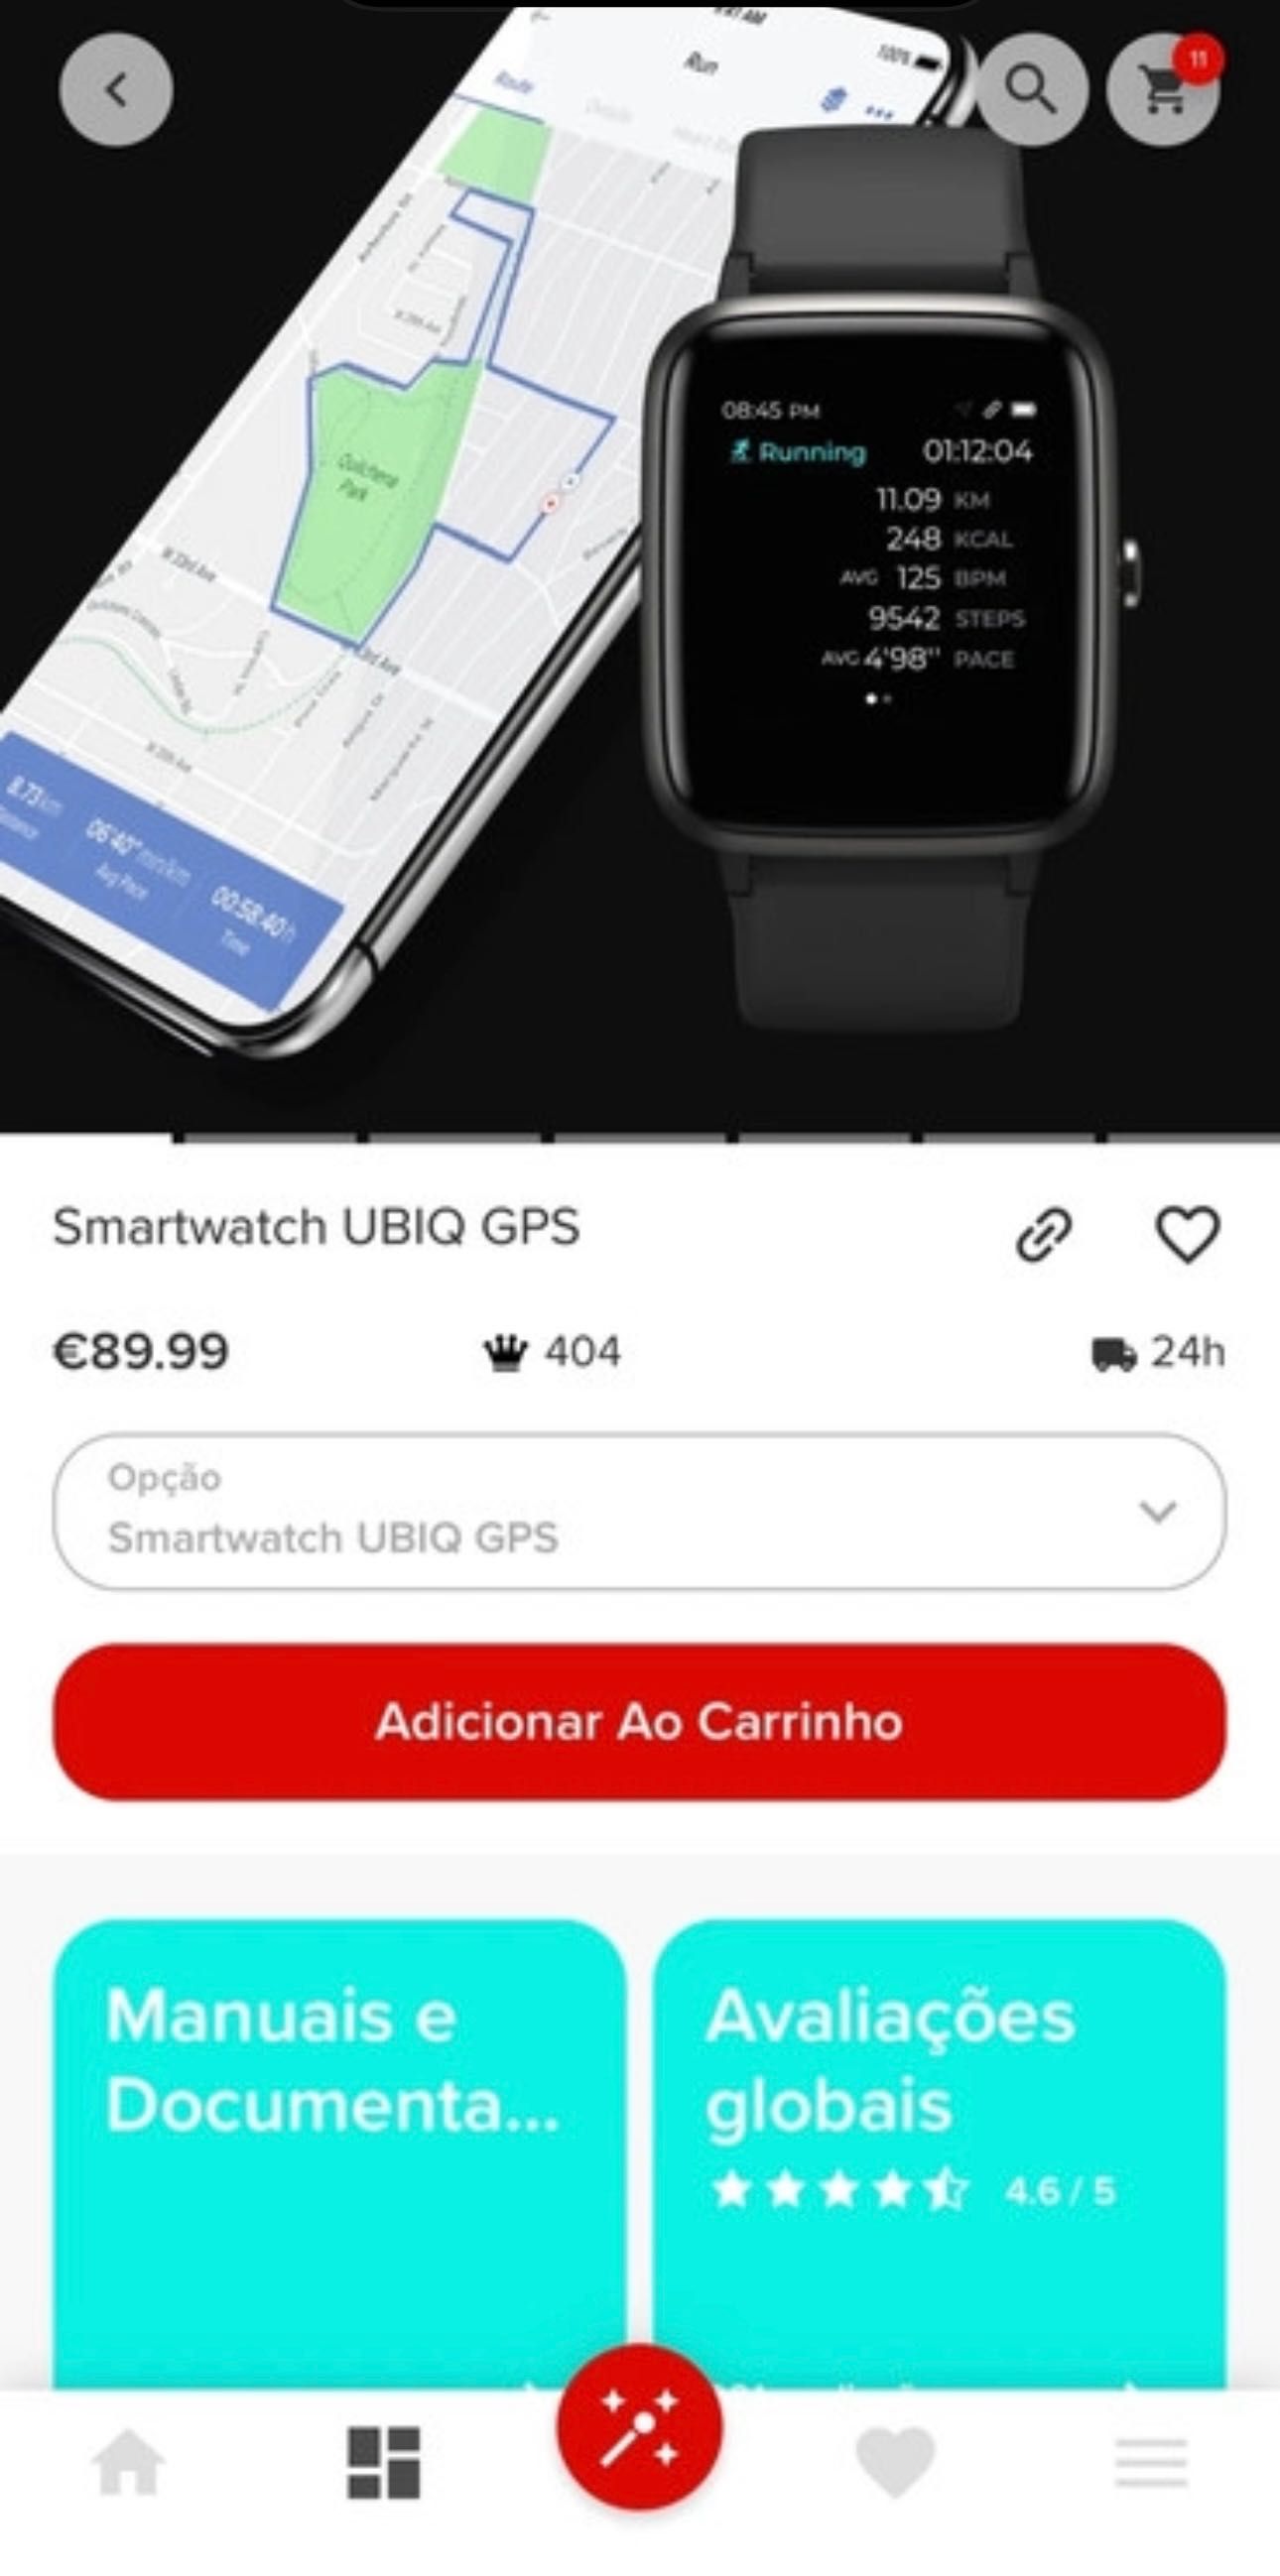 Smartwatch ubiq gps Prozis